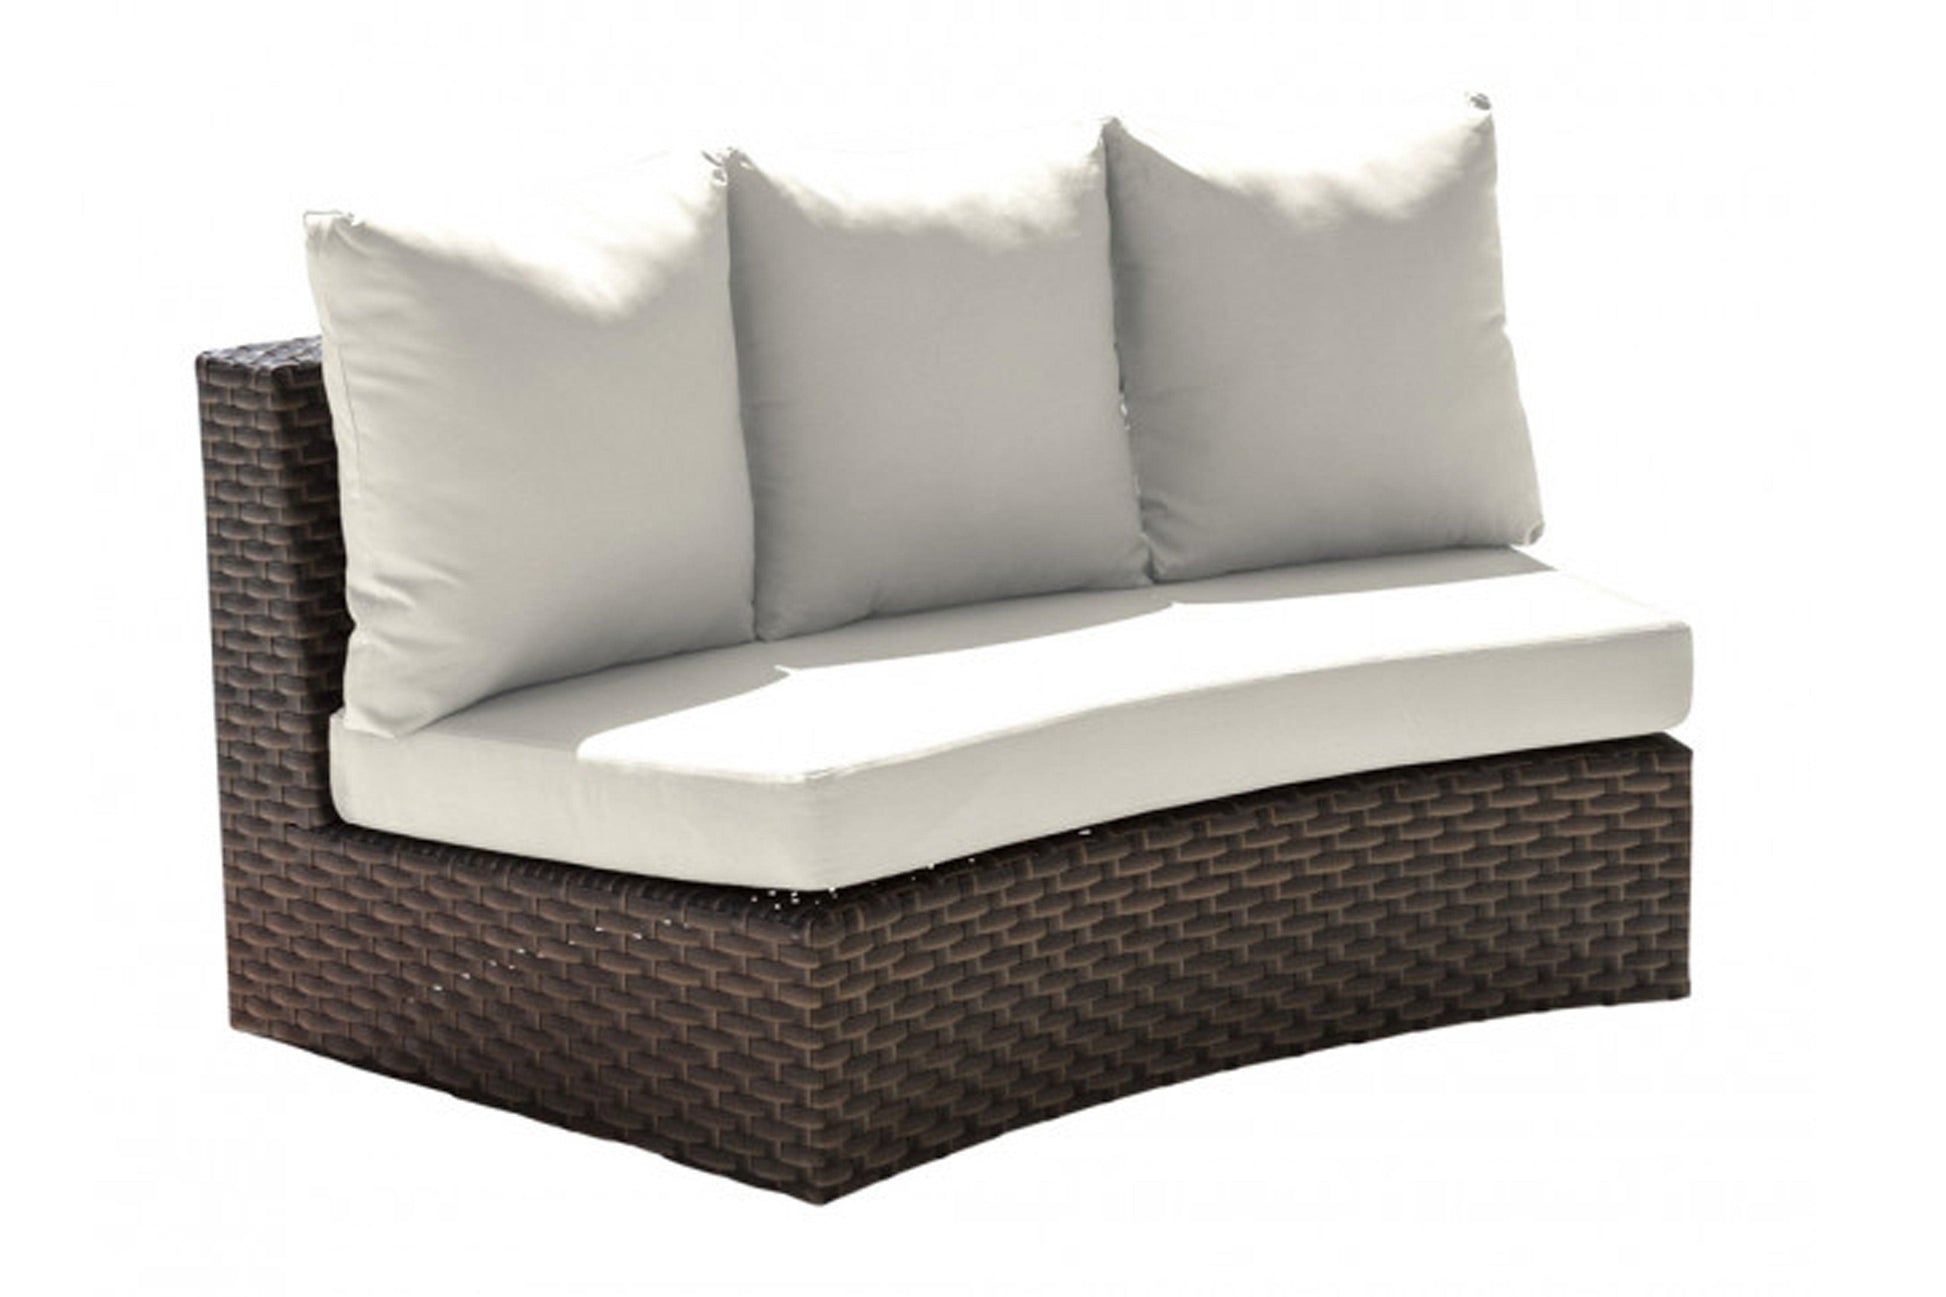 Big Sur Curved Loveseat w/off-white cushion - Venini Furniture 